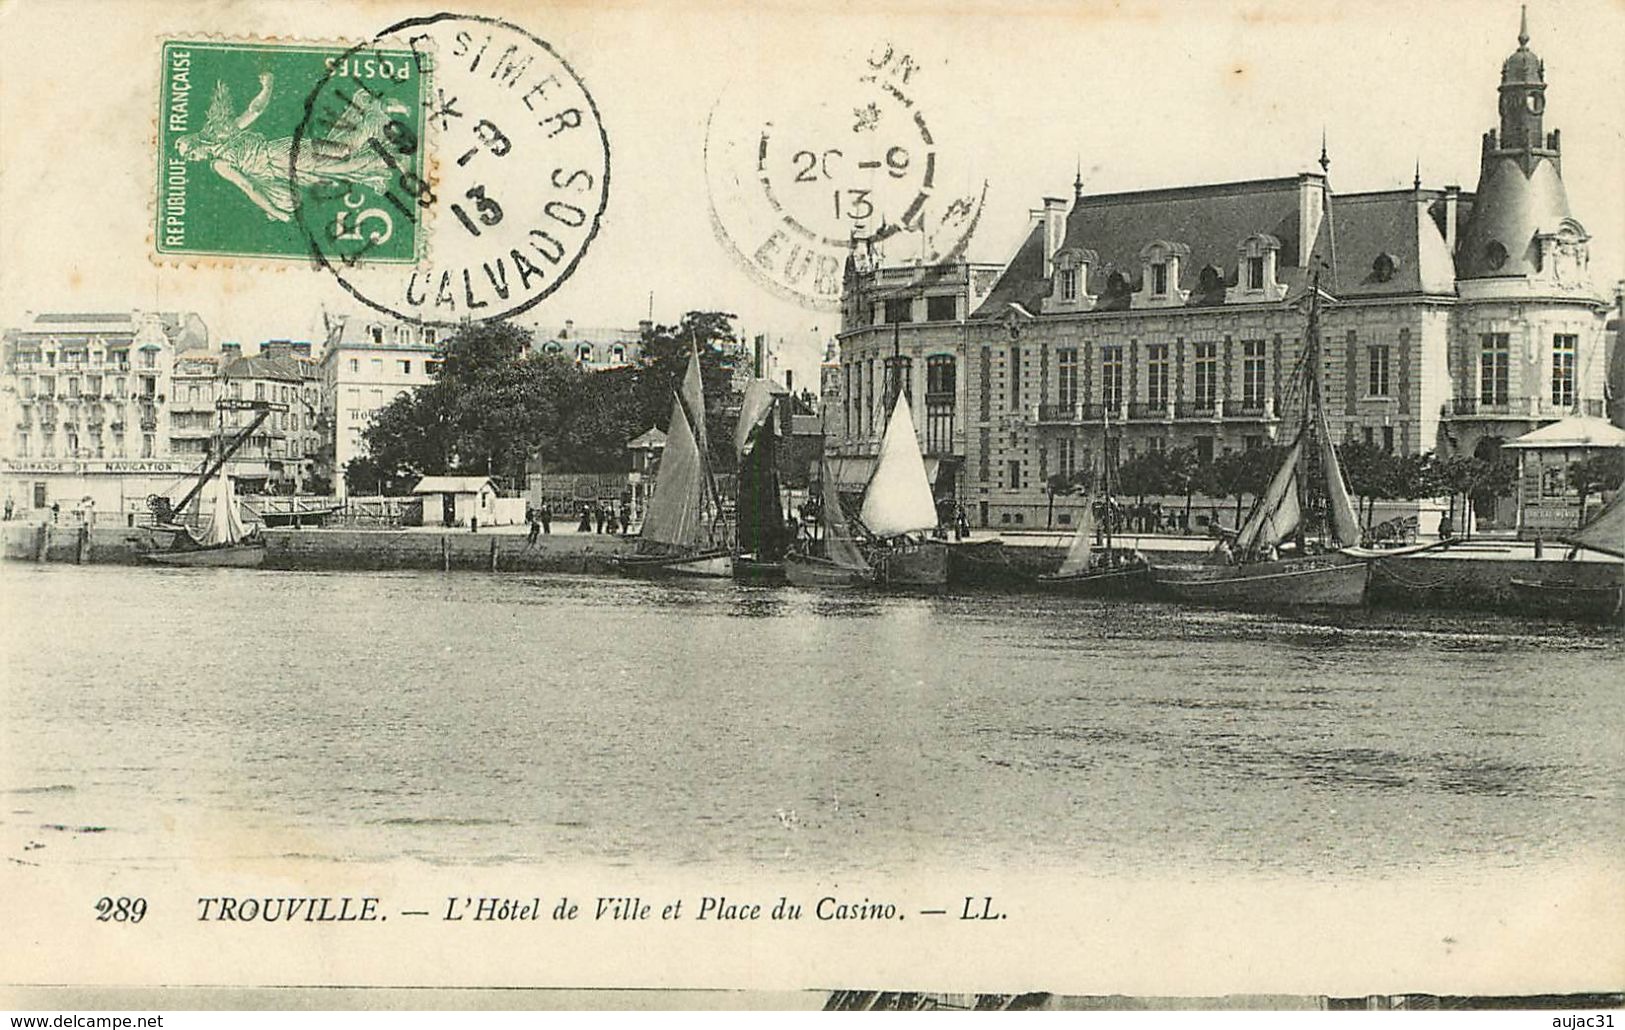 Dép 14 - Calvados - Deauville 32 cartes - Trouville 72 cartes - Lots en vrac - Lot de 104 cartes